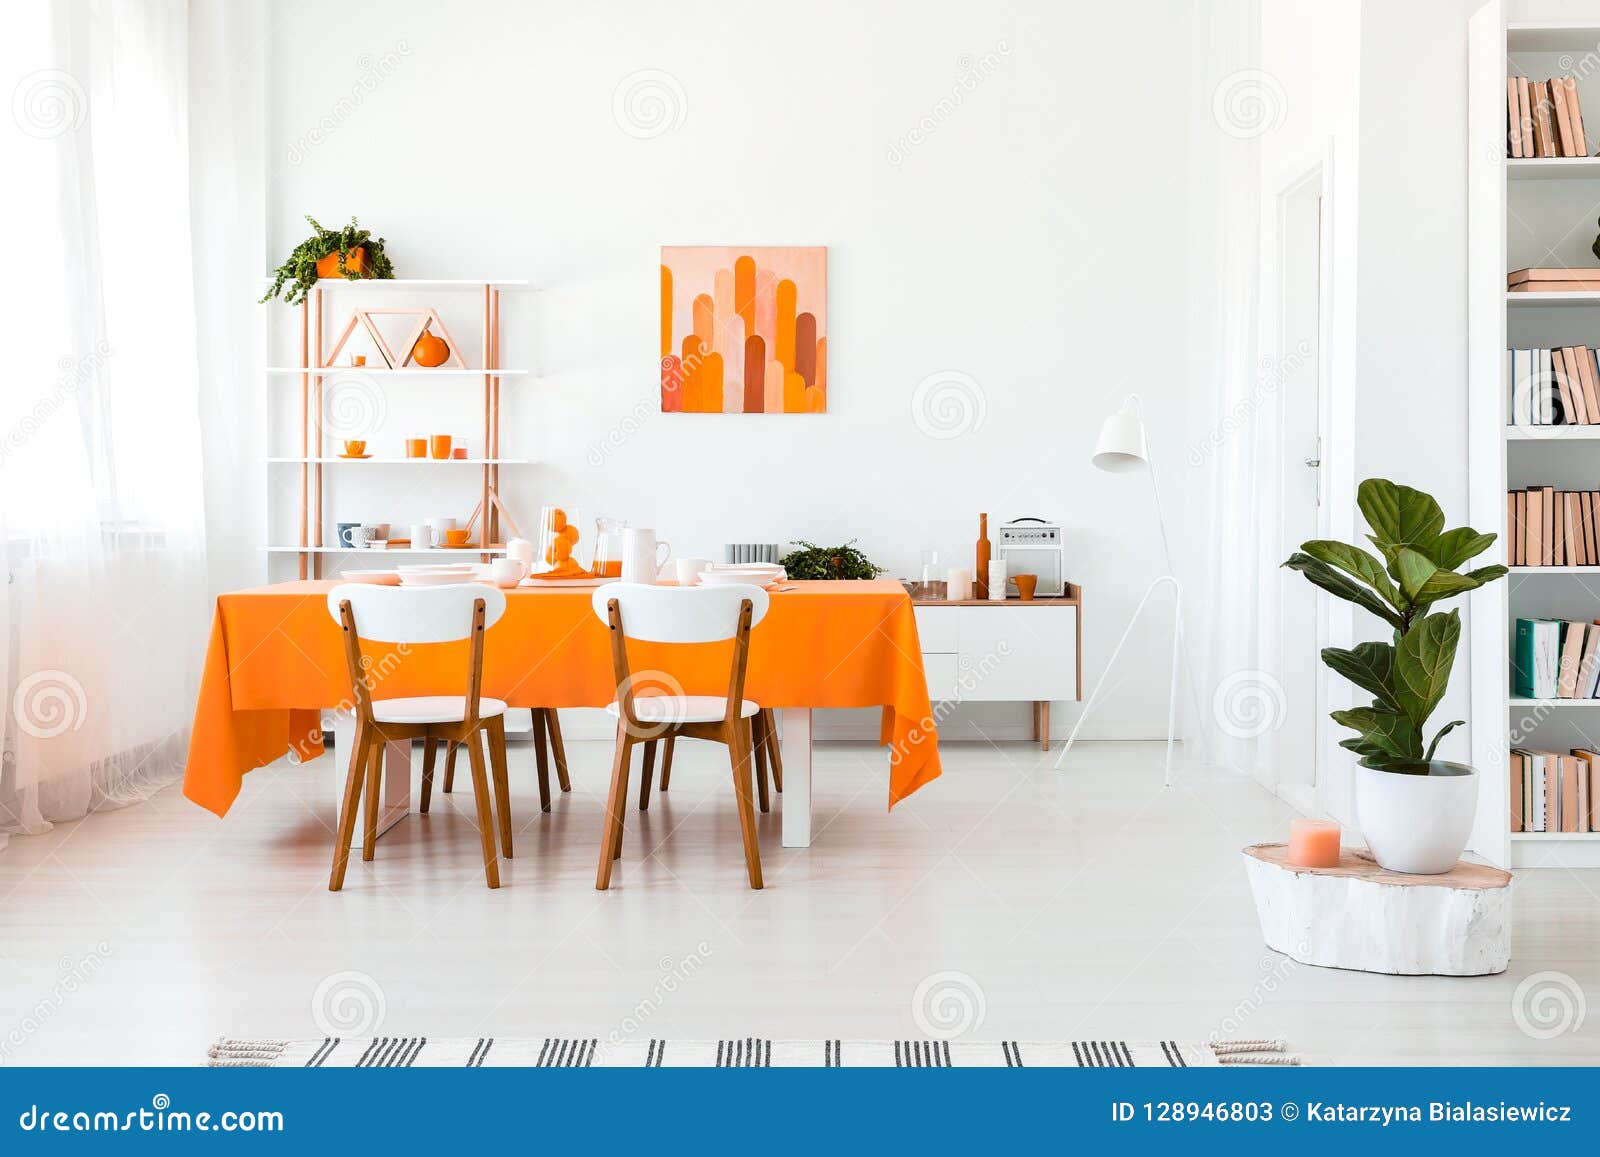 Foto real del comedor elegante pero simple en color vivo Concepto de diseño interior anaranjado y blanco